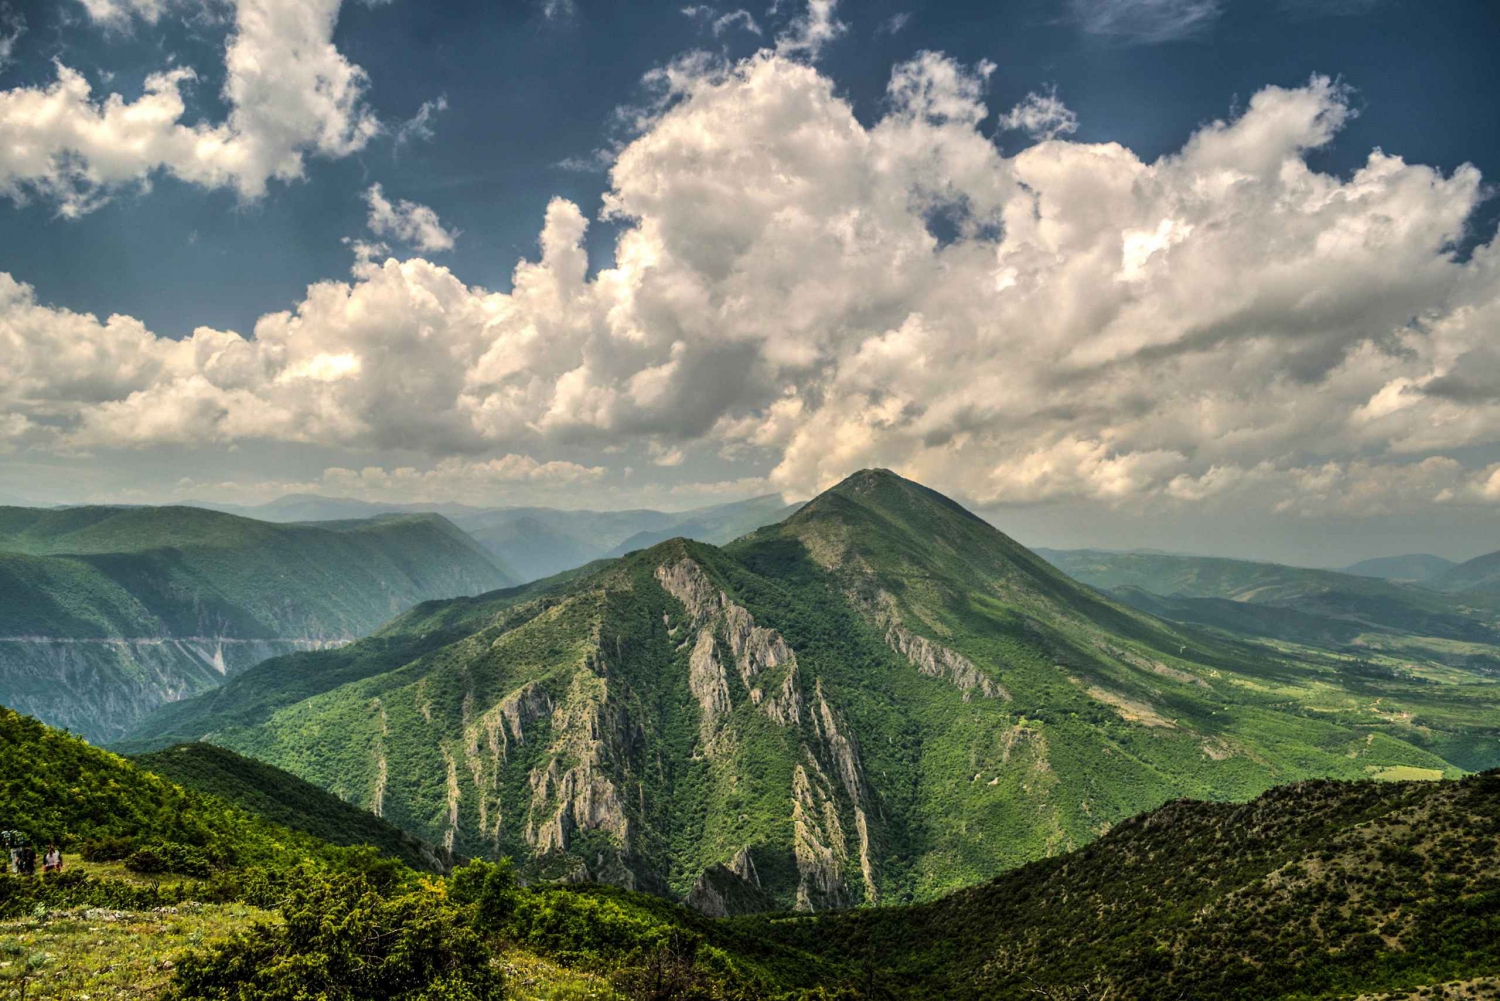 Skopje van bovenaf: Een ervaring vanuit de bergen